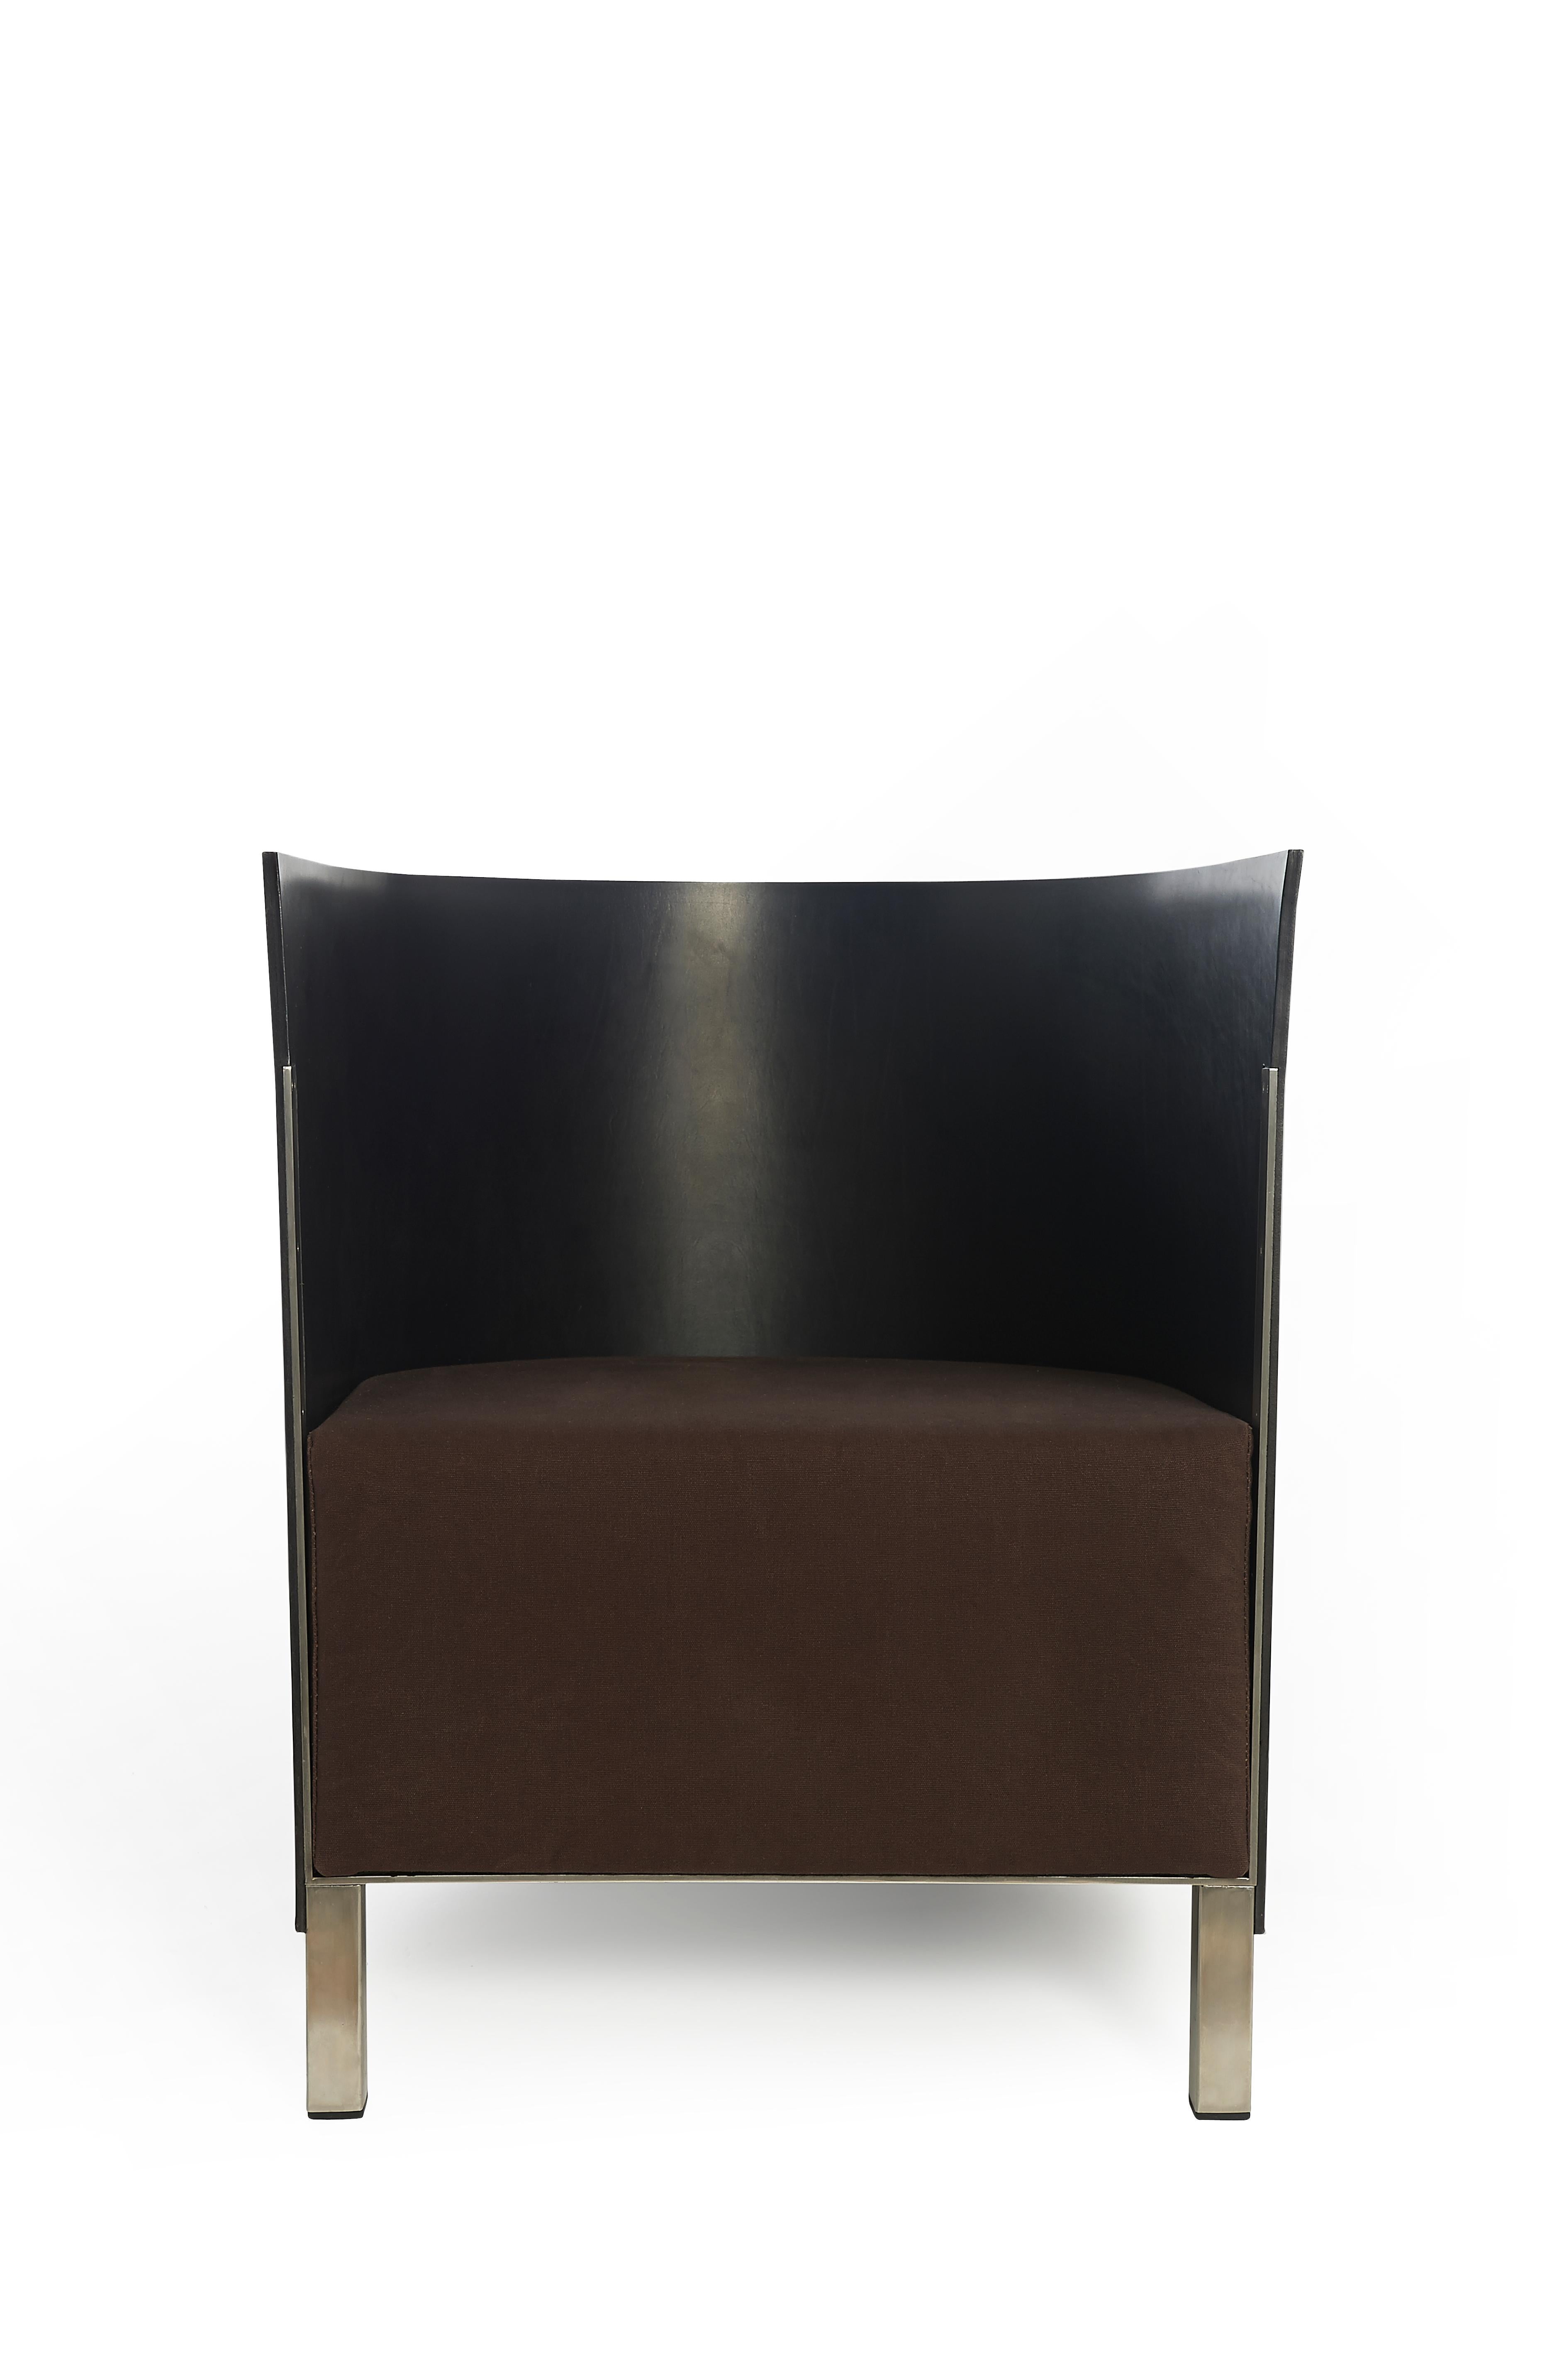 Le fauteuil Lensvelt MVS S88 en cuir noir est conçu par Maarten van Severen. Il s'agit d'un fauteuil bas. Matériaux : le dossier est en cuir de selle noir, l'assise en toile marron et le cadre en acier inoxydable.
  